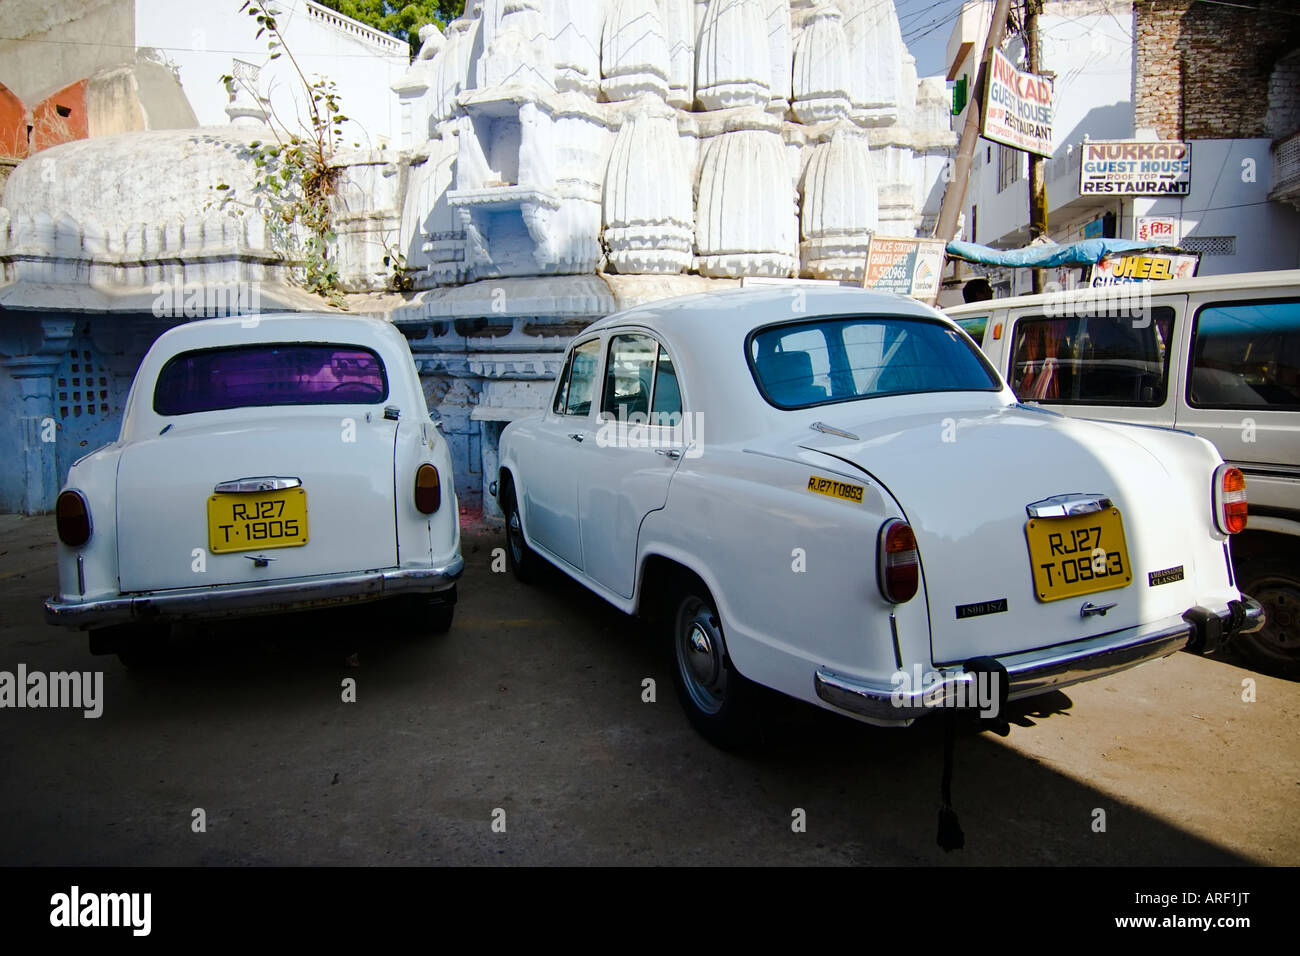 White ambassador cars - Udaipur, Rajasthan, India Stock Photo